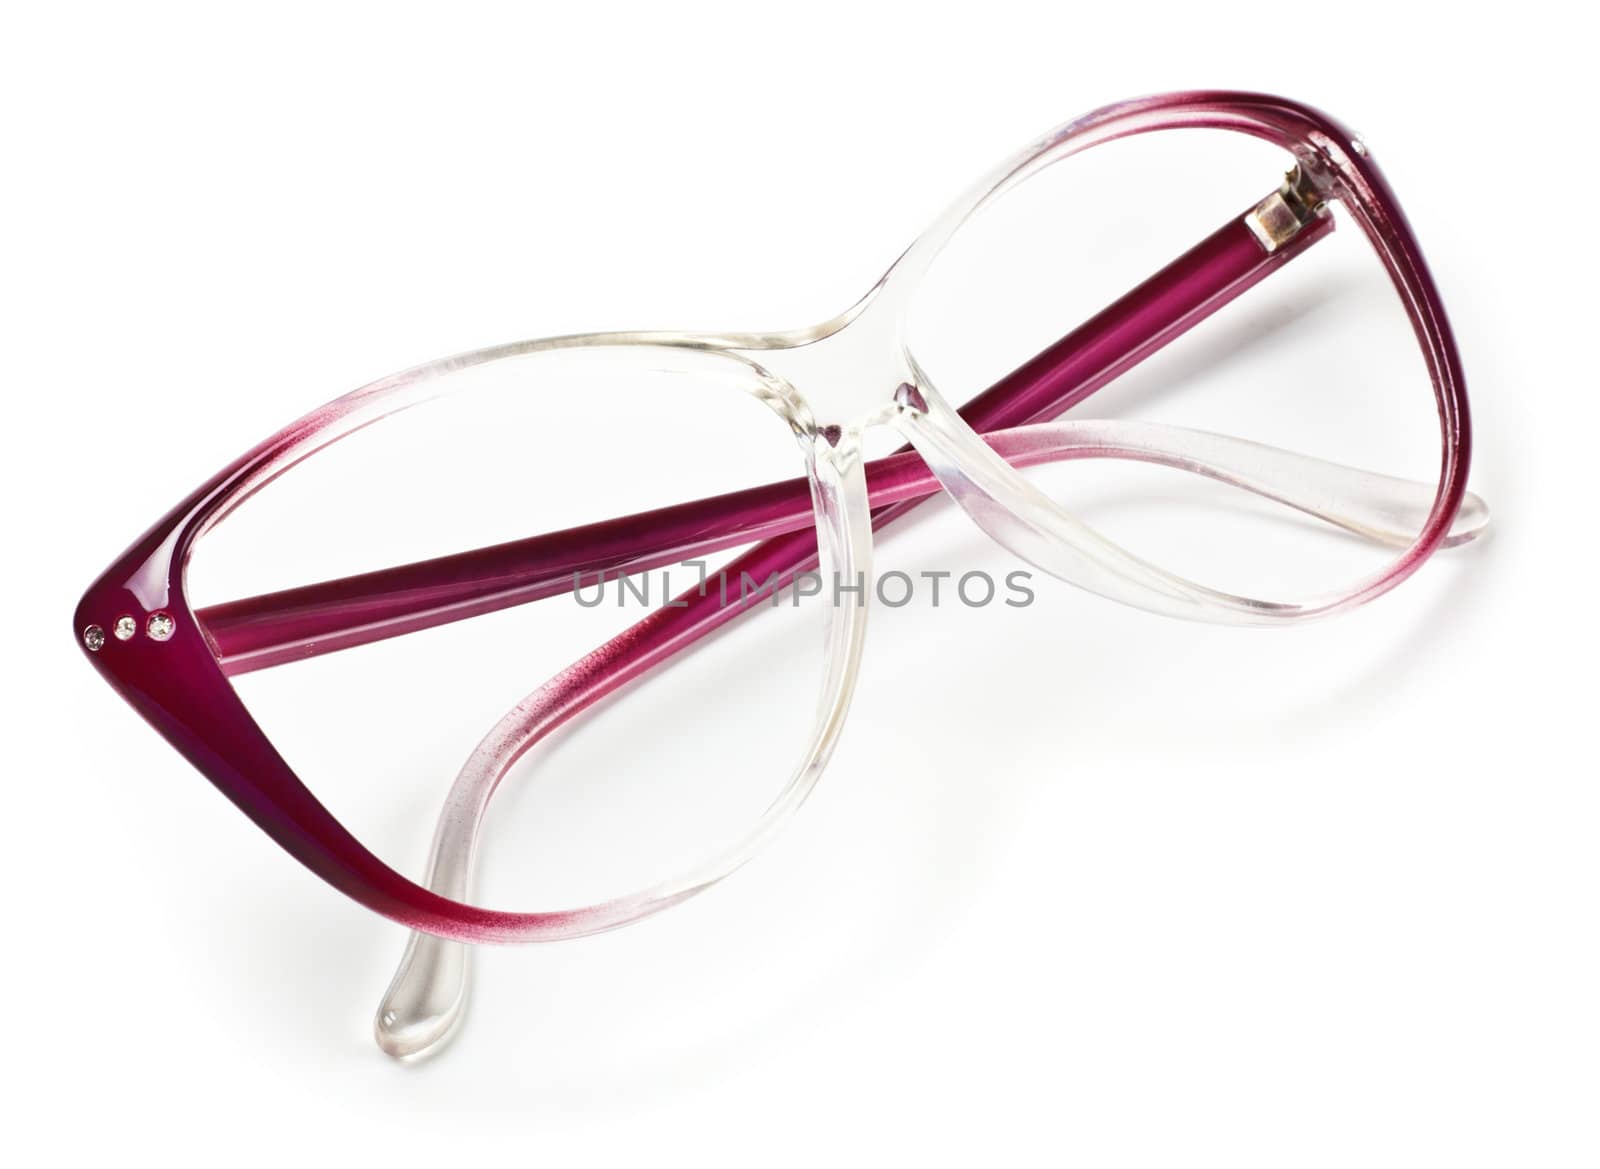 purple laying eyeglasses isolated on white background